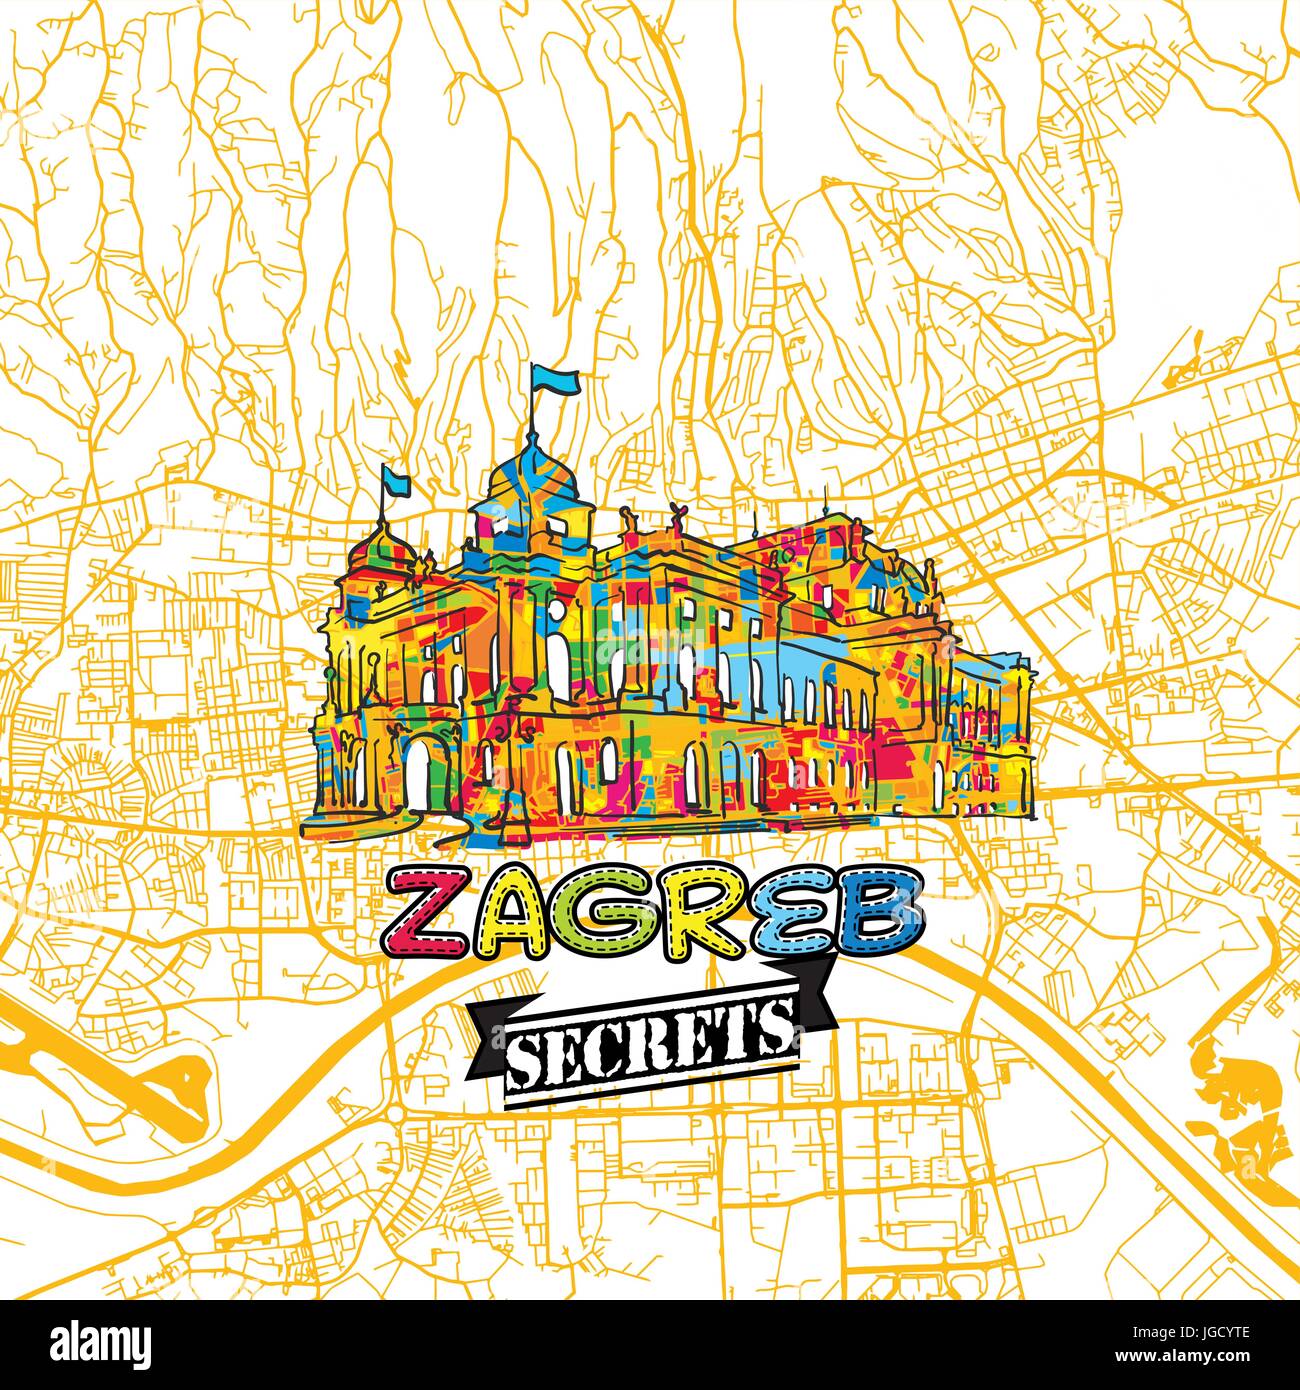 Zagreb Reise Geheimnisse Art Map für die Zuordnung von Experten und Reiseführer. Handgemachte Stadt Logo, Typo-Abzeichen und Hand gezeichnete Vektor-Bild an der Spitze sind gruppiert und Stock Vektor